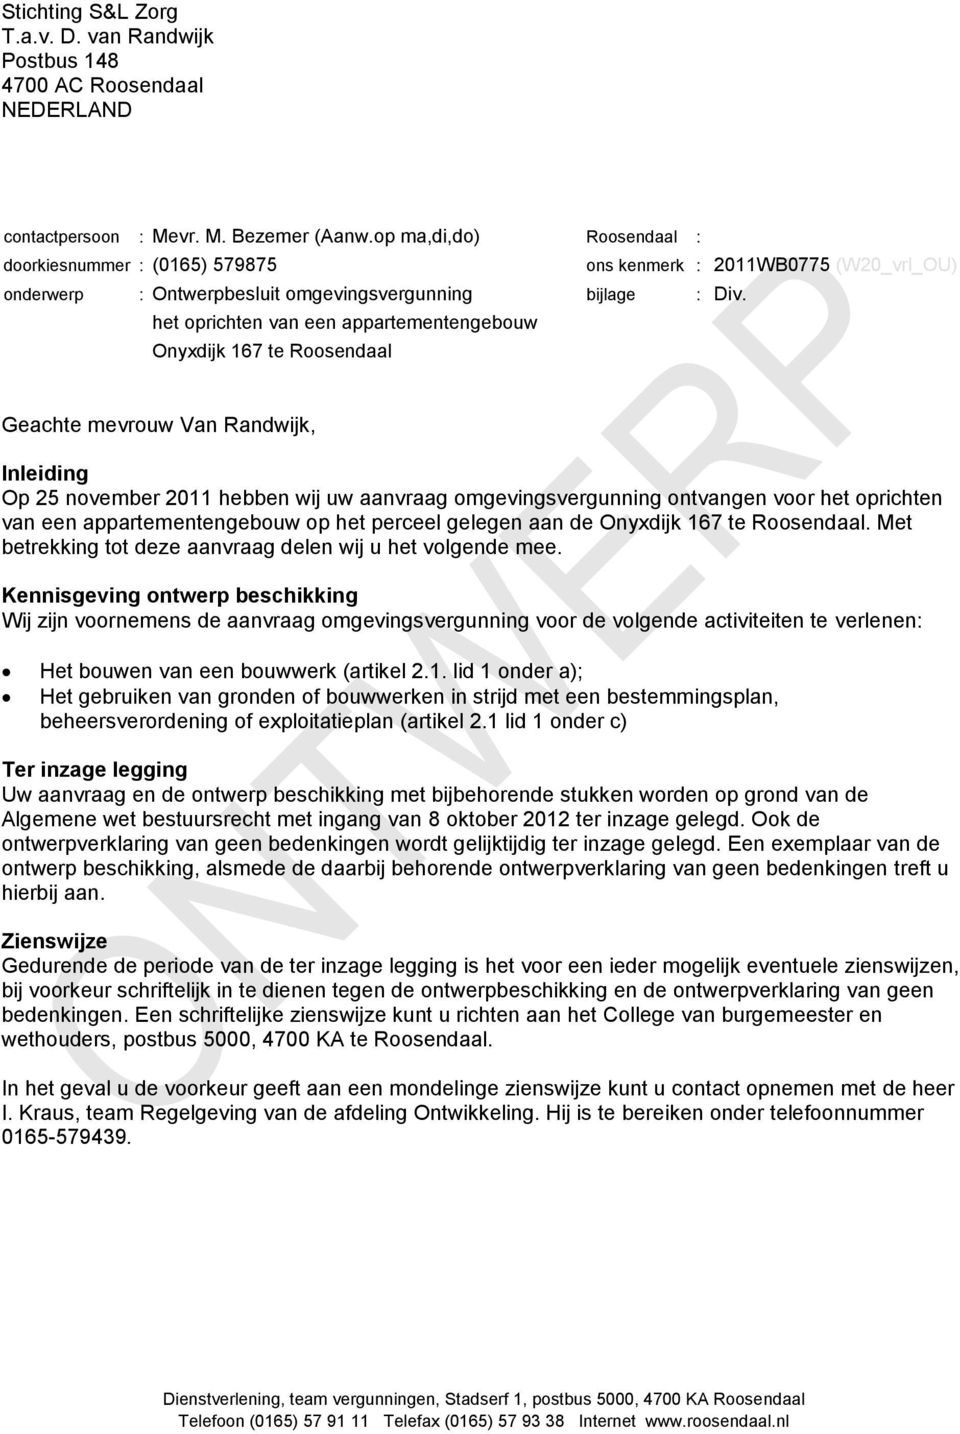 Geachte mevrouw Van Randwijk, Inleiding Op 25 november 2011 hebben wij uw aanvraag omgevingsvergunning ontvangen voor het oprichten van een appartementengebouw op het perceel gelegen aan de Onyxdijk